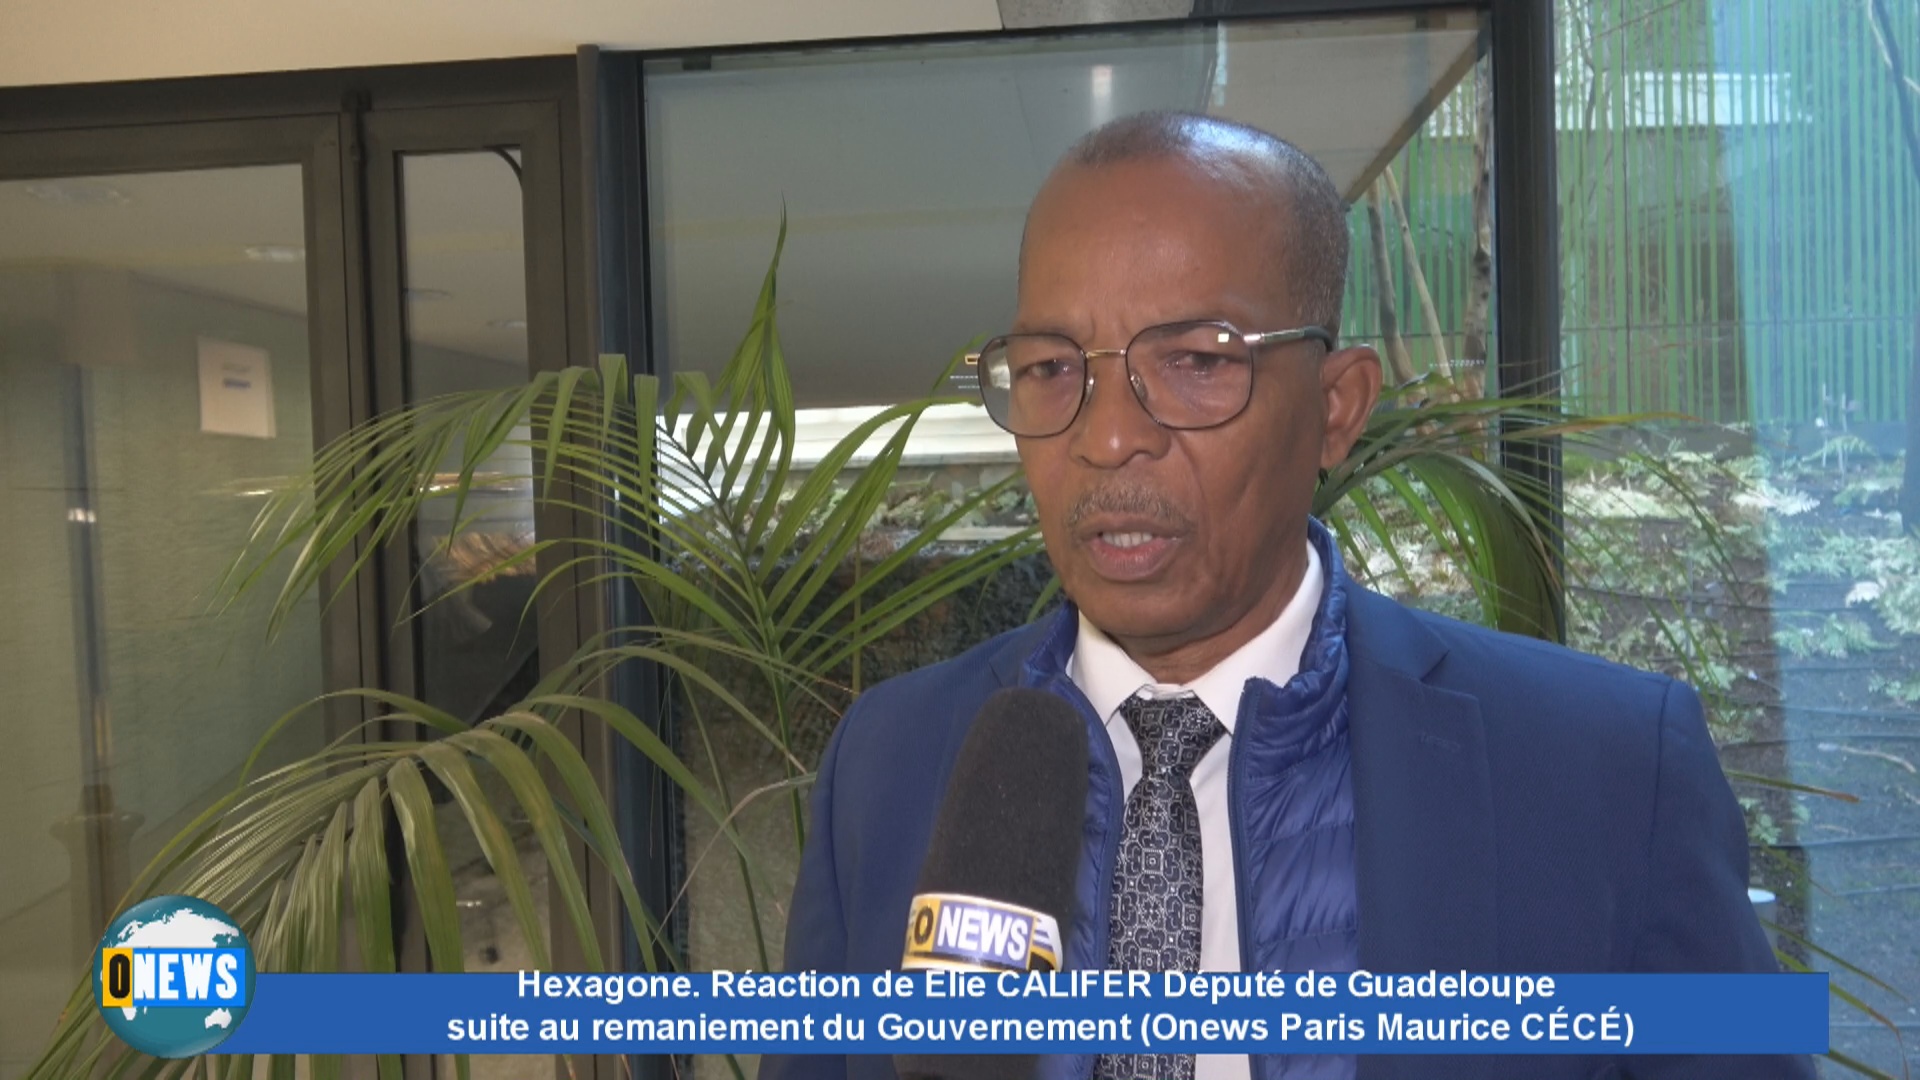 [Vidéo] Hexagone Réaction de Élie CALIFER Député de Guadeloupe suite au remaniement du Gouvernement